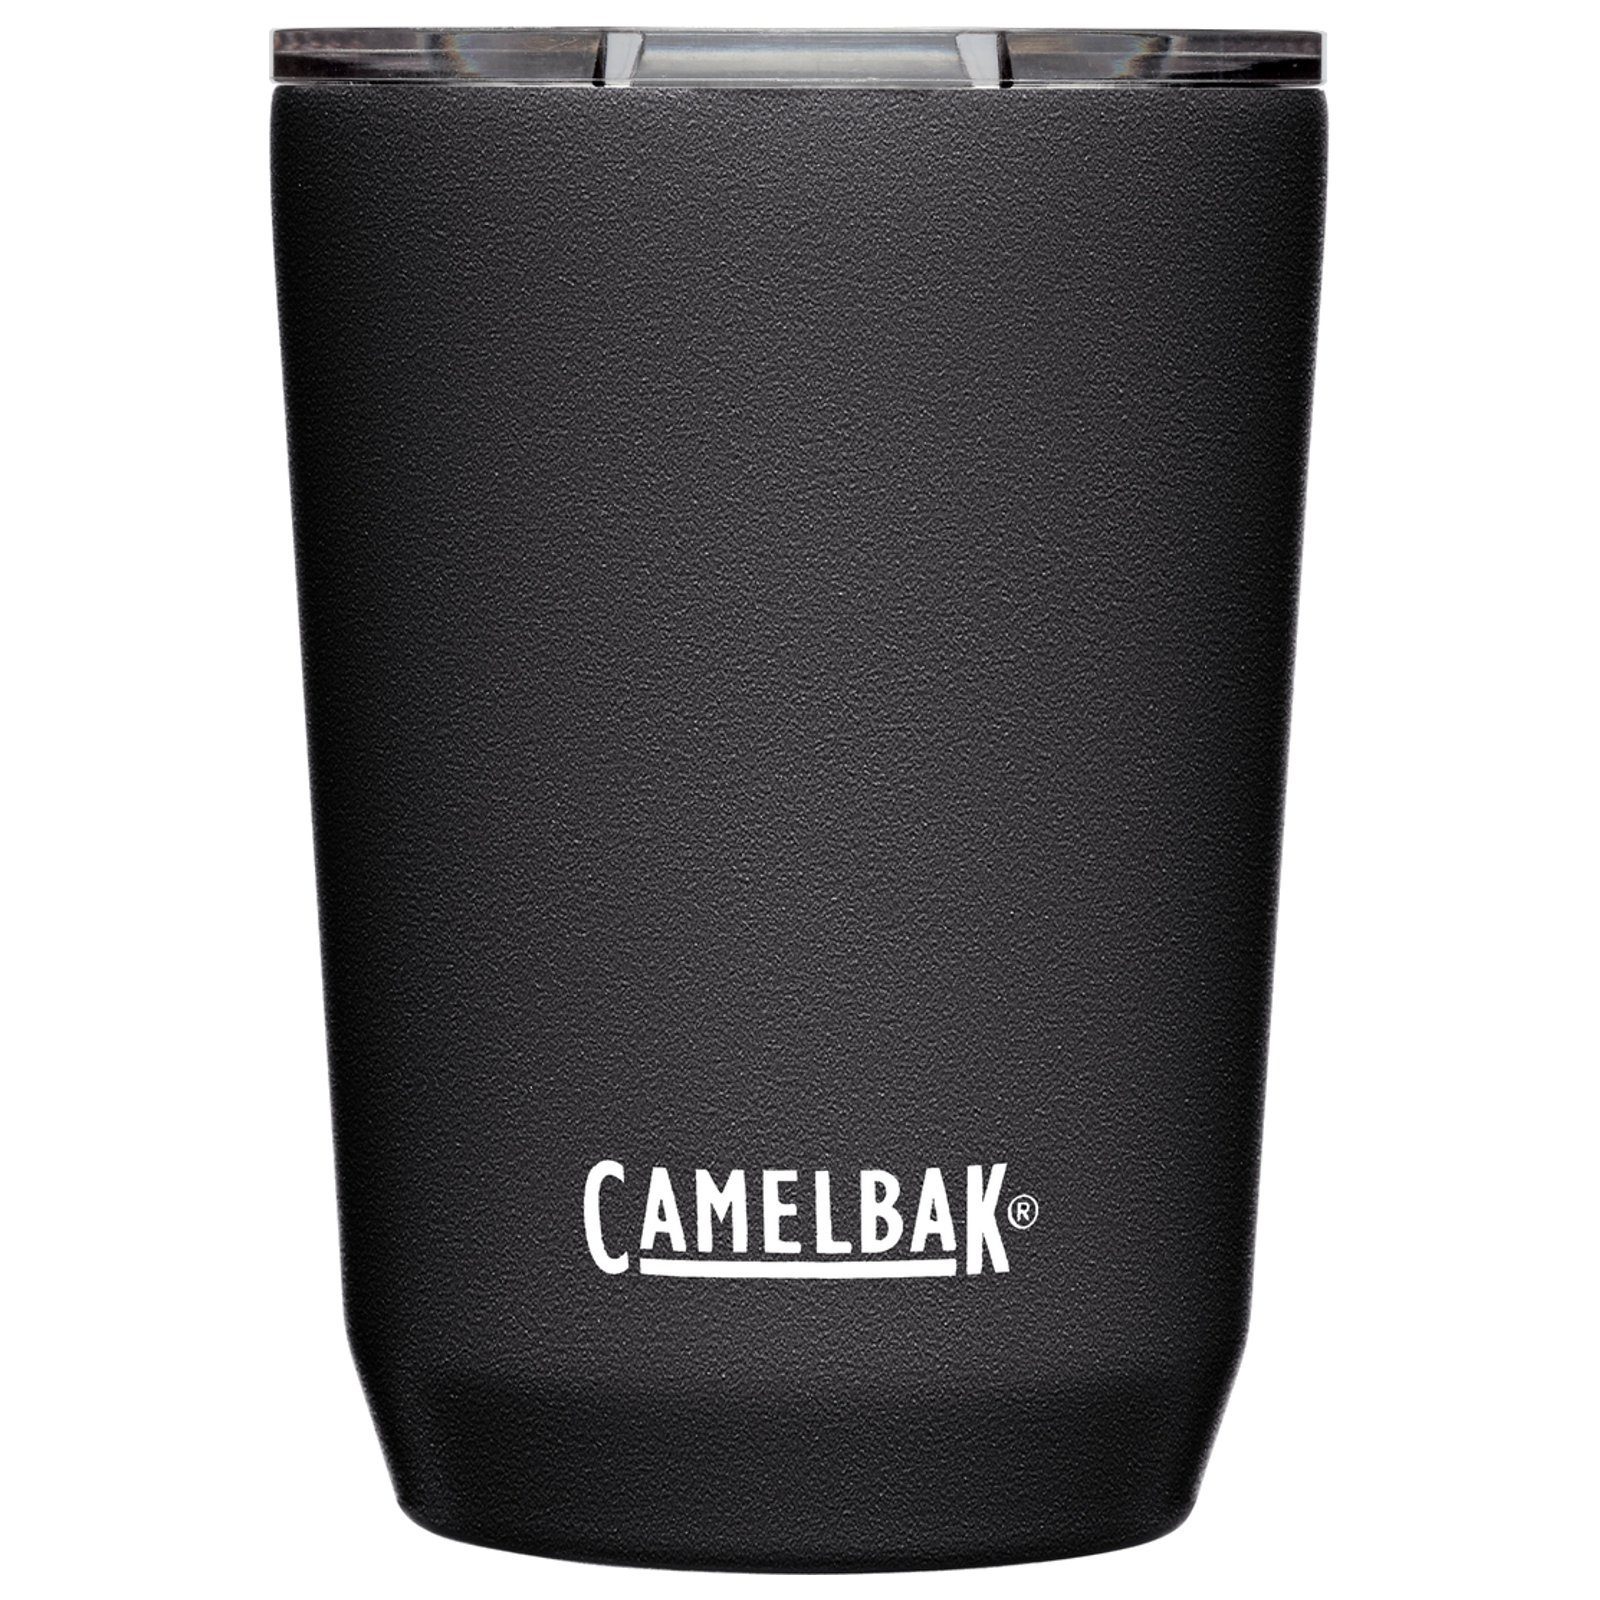 Camelbak Thermoflasche Schwarz